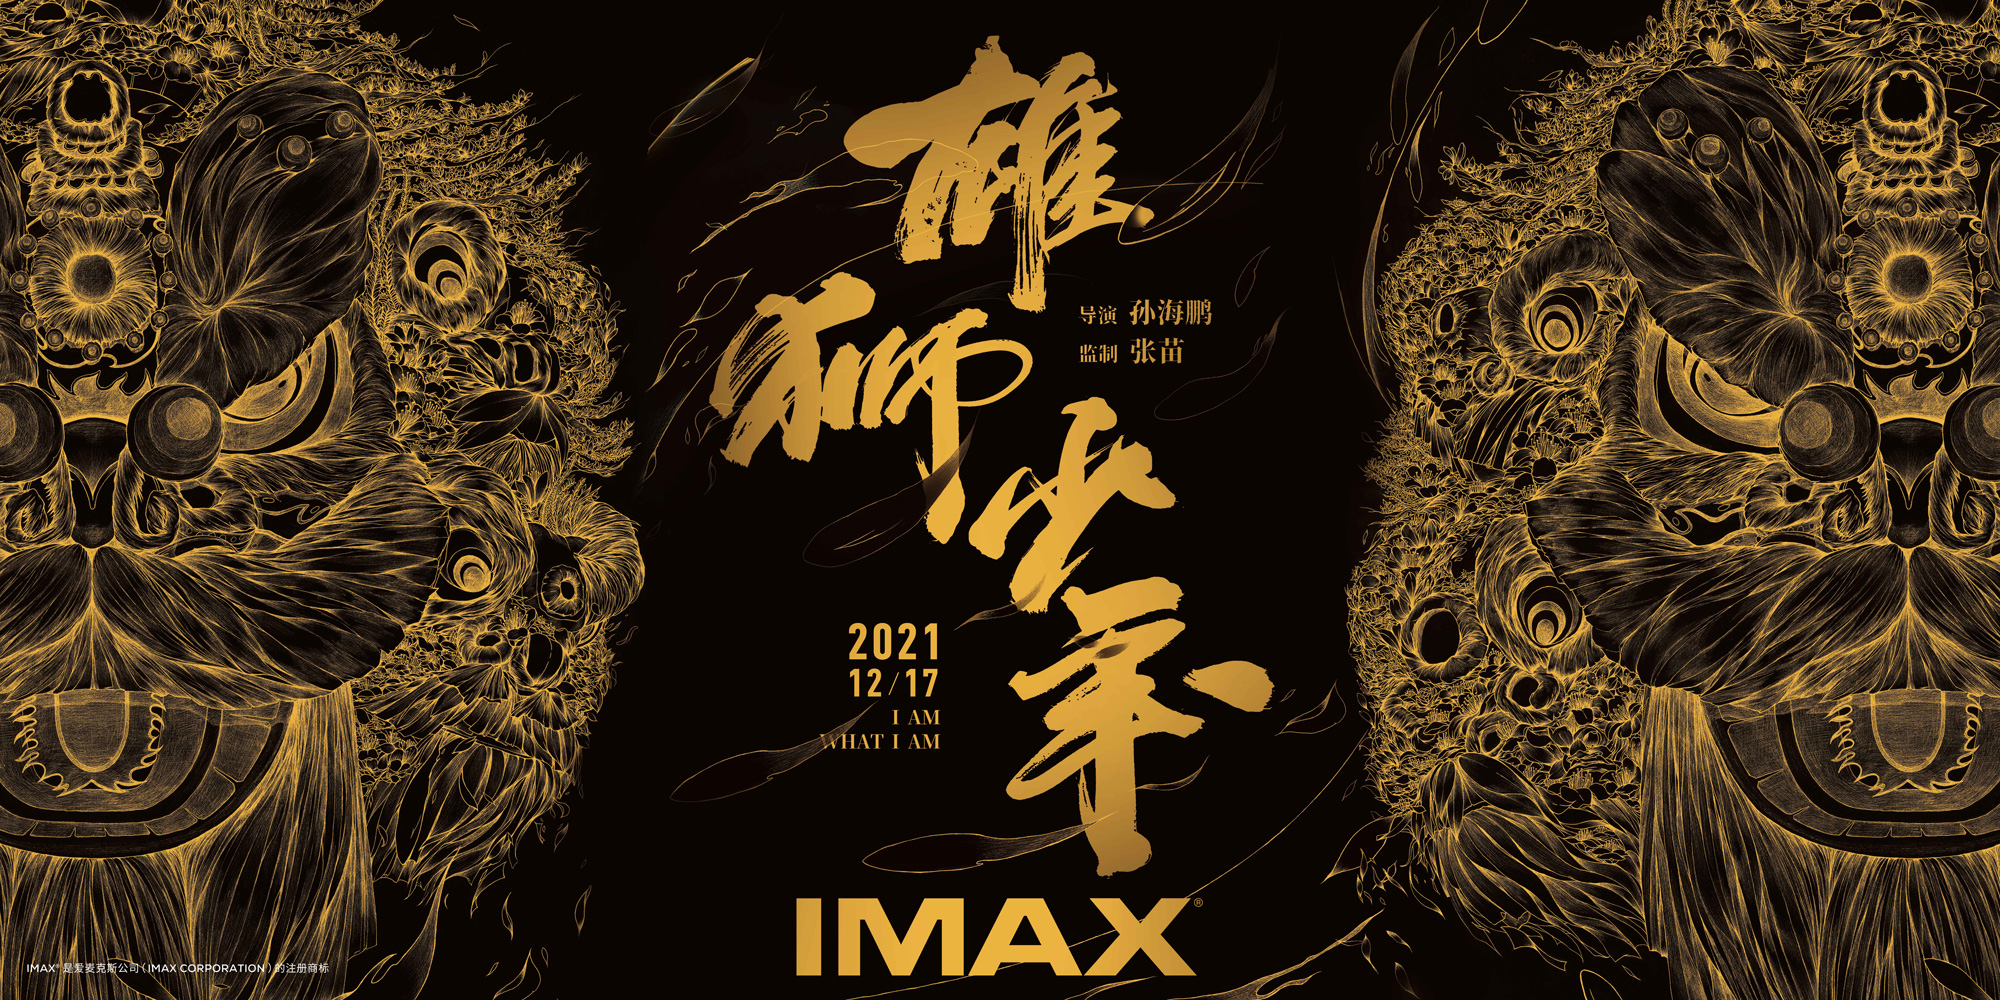 动画电影《雄狮少年》将于12月17日贺岁档登陆IMAX®影院 IMAX点映即将于本周末在全国开启